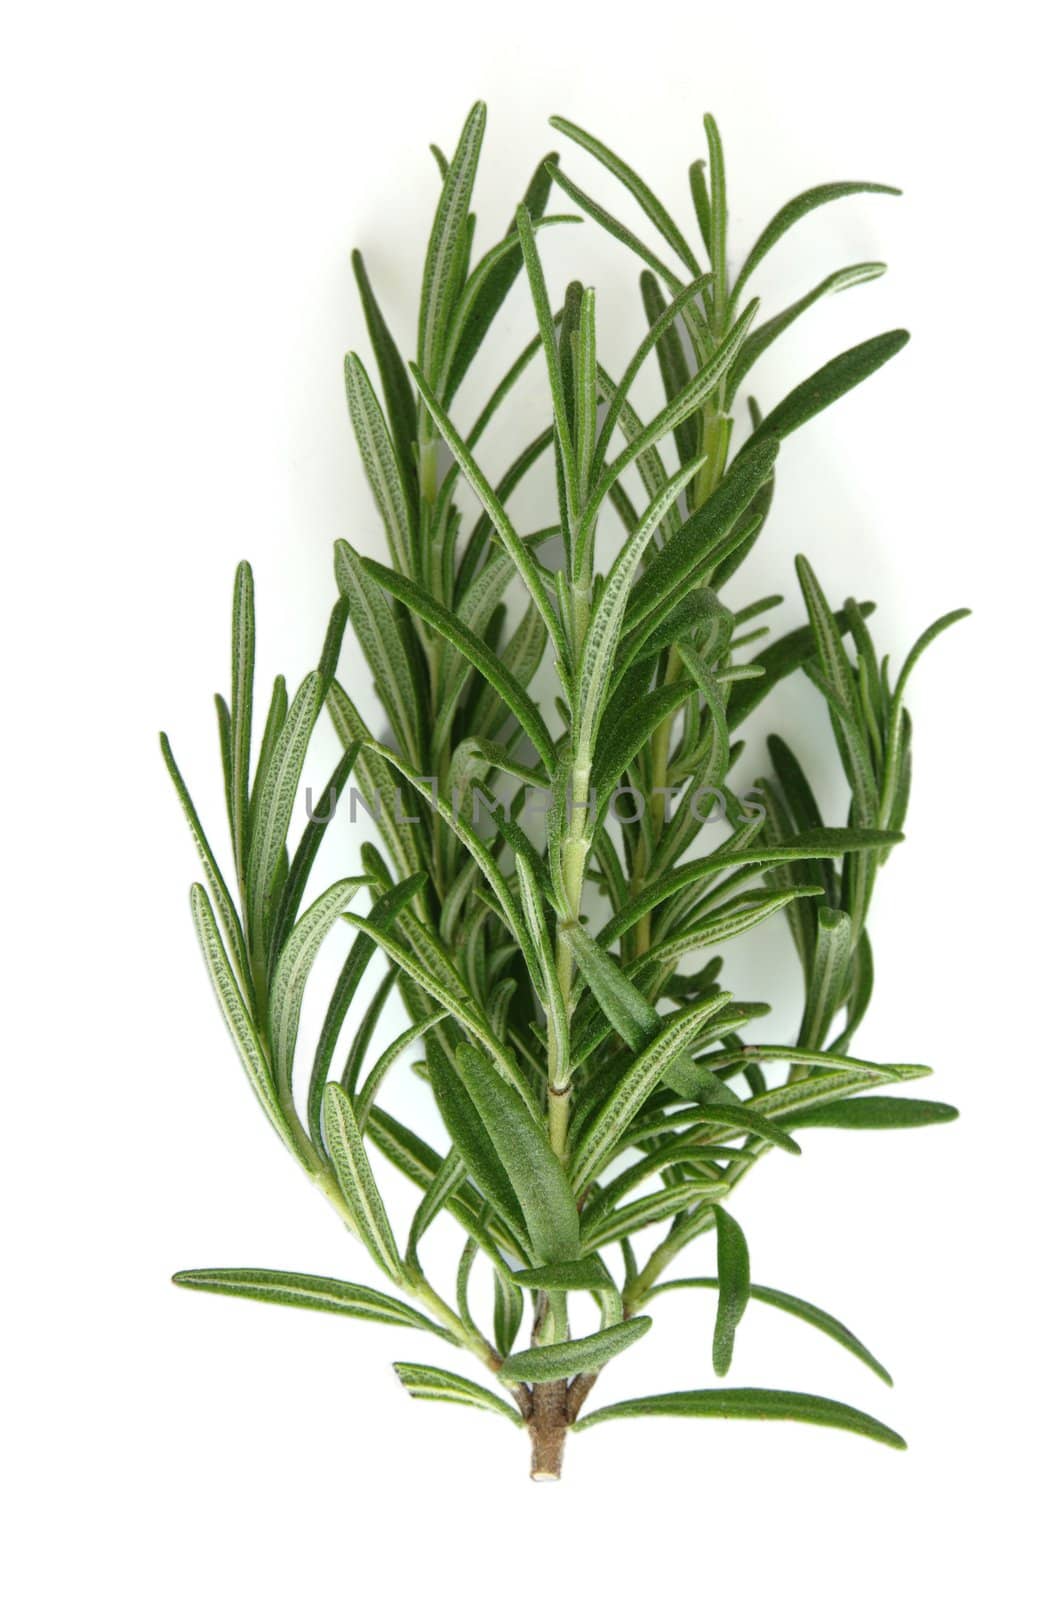 Rosemary (Rosmarinus Officinalis) herb cutting. Shot on white